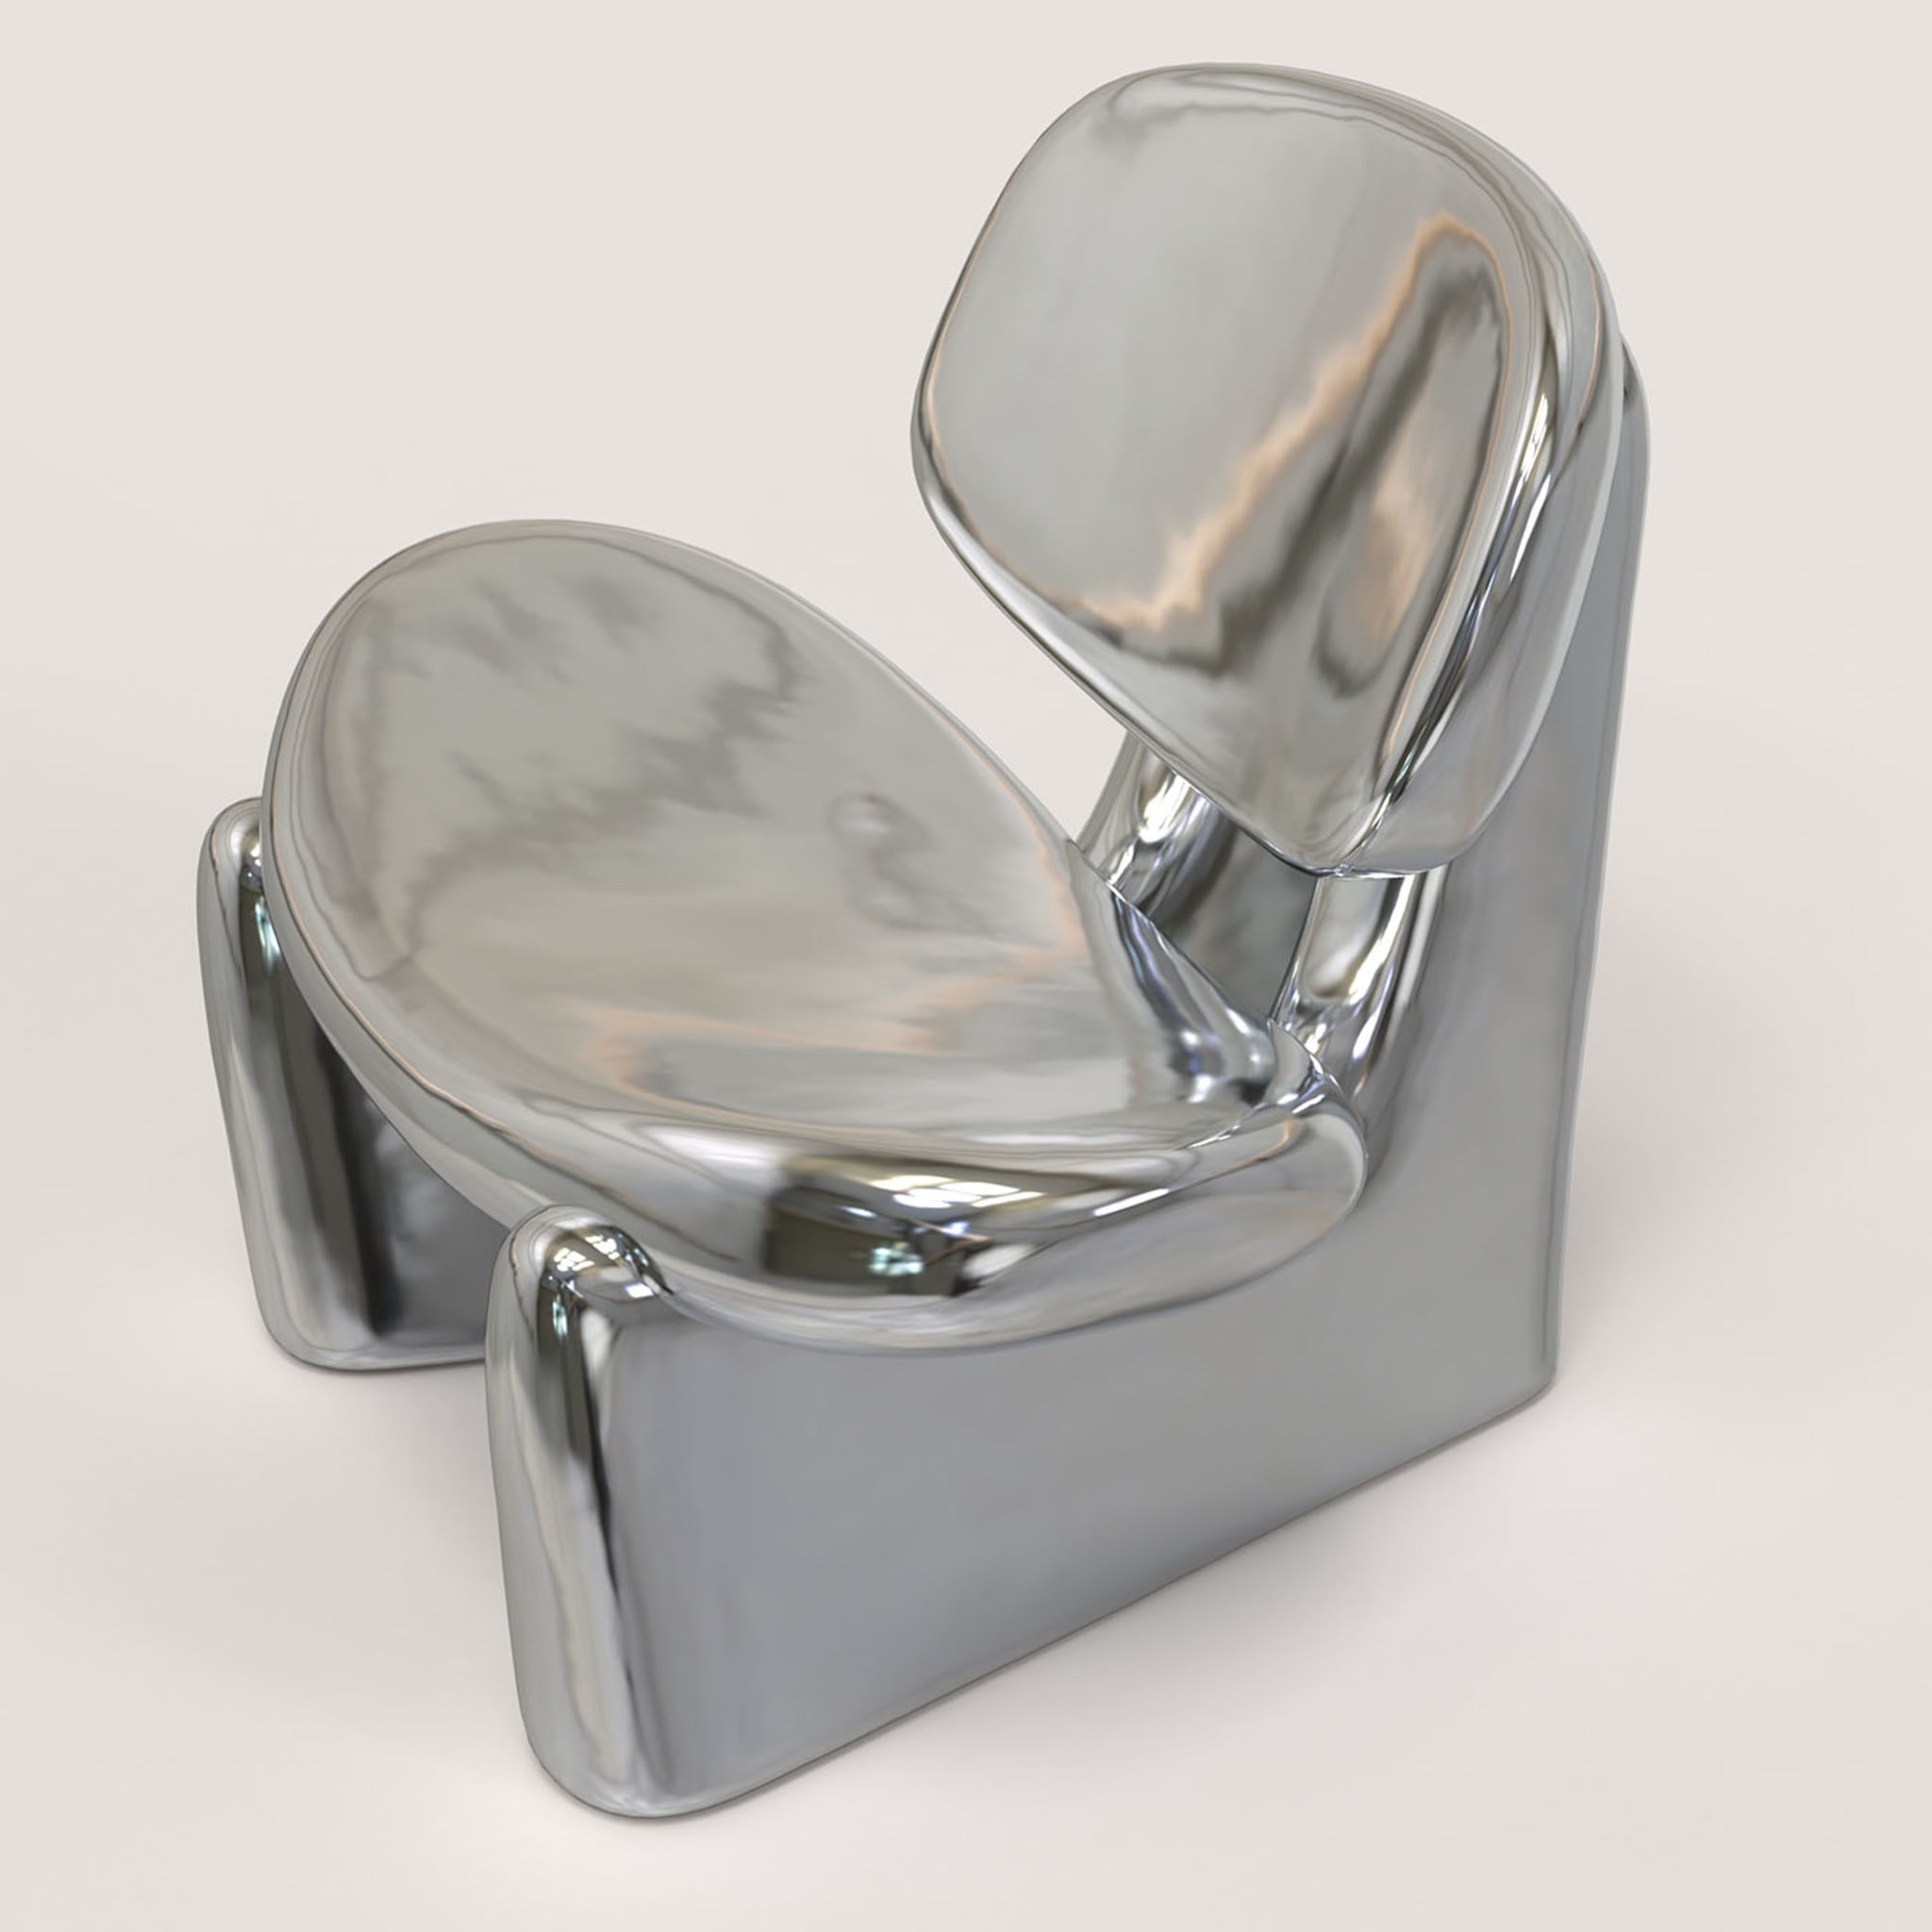 Pau V1 Silver Sculptural Chair - Alternative view 2